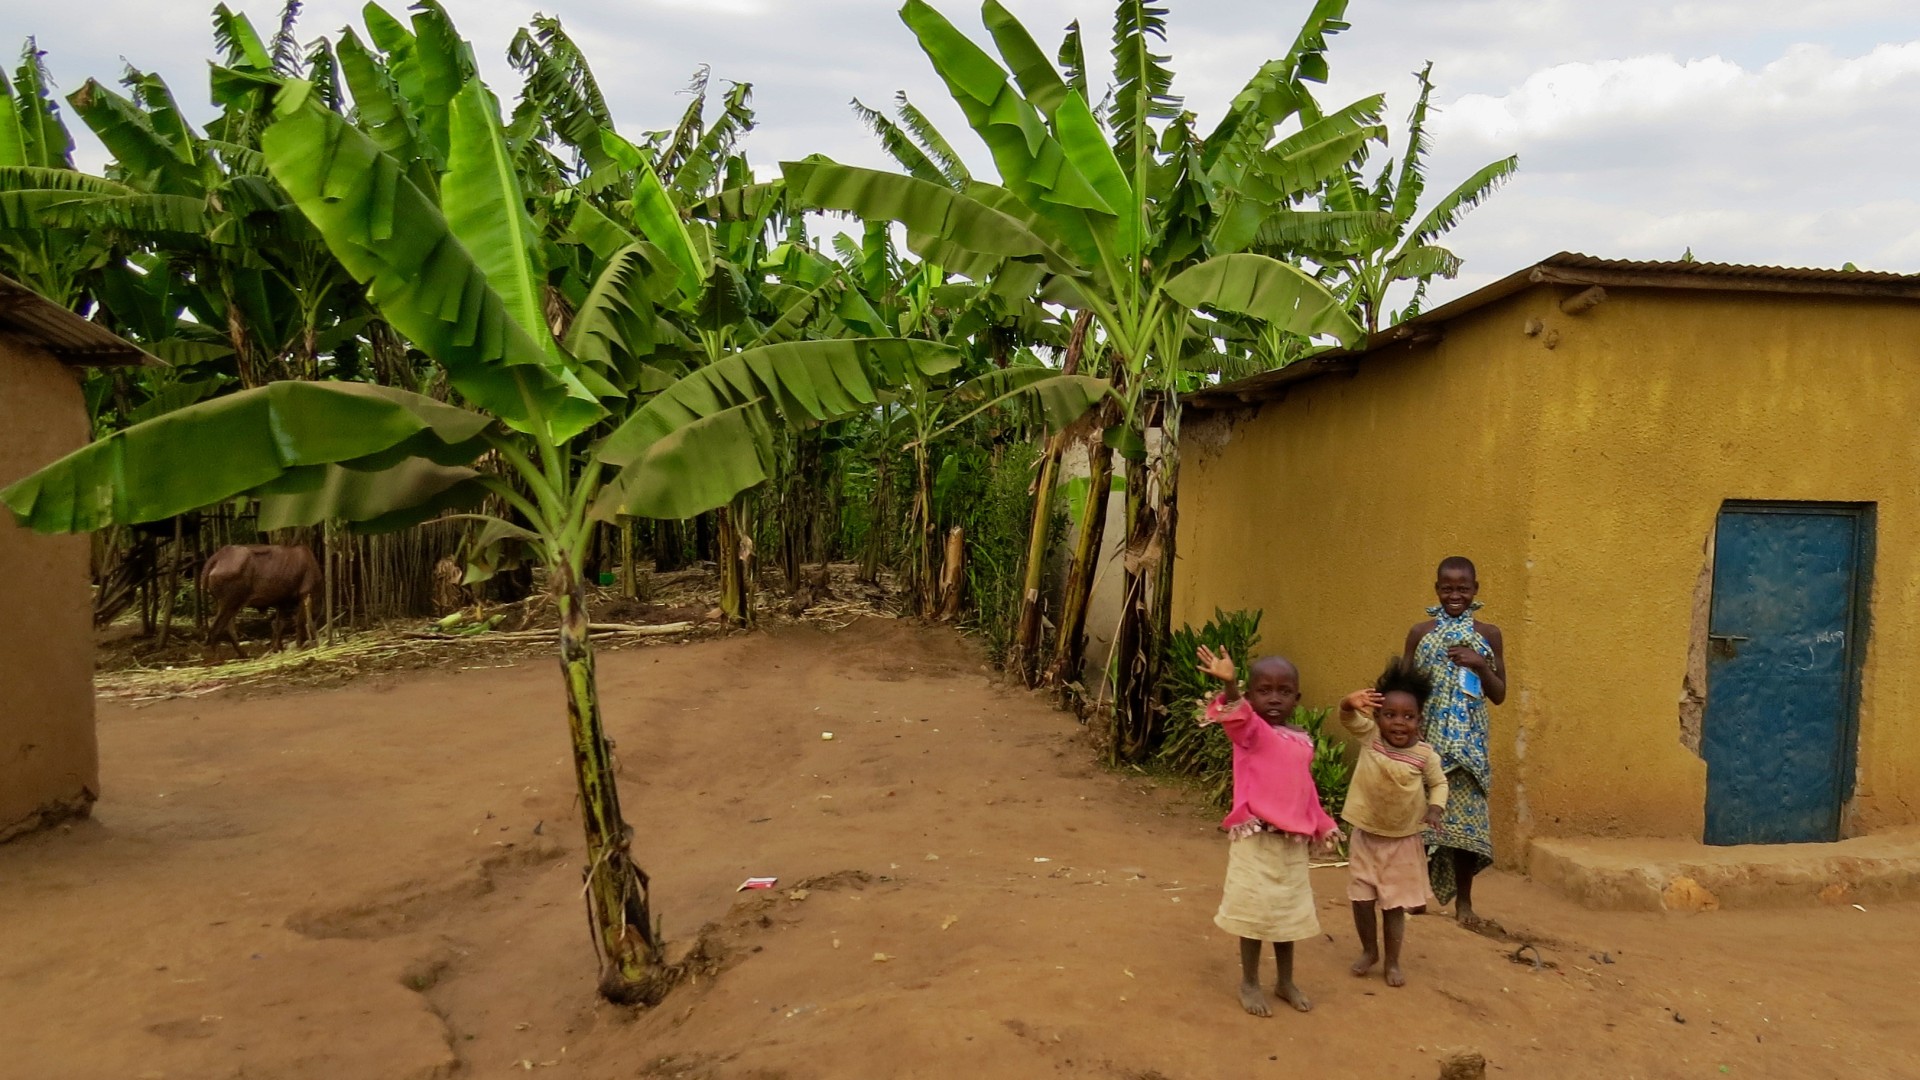 Kids in a Rwandan village waving hello